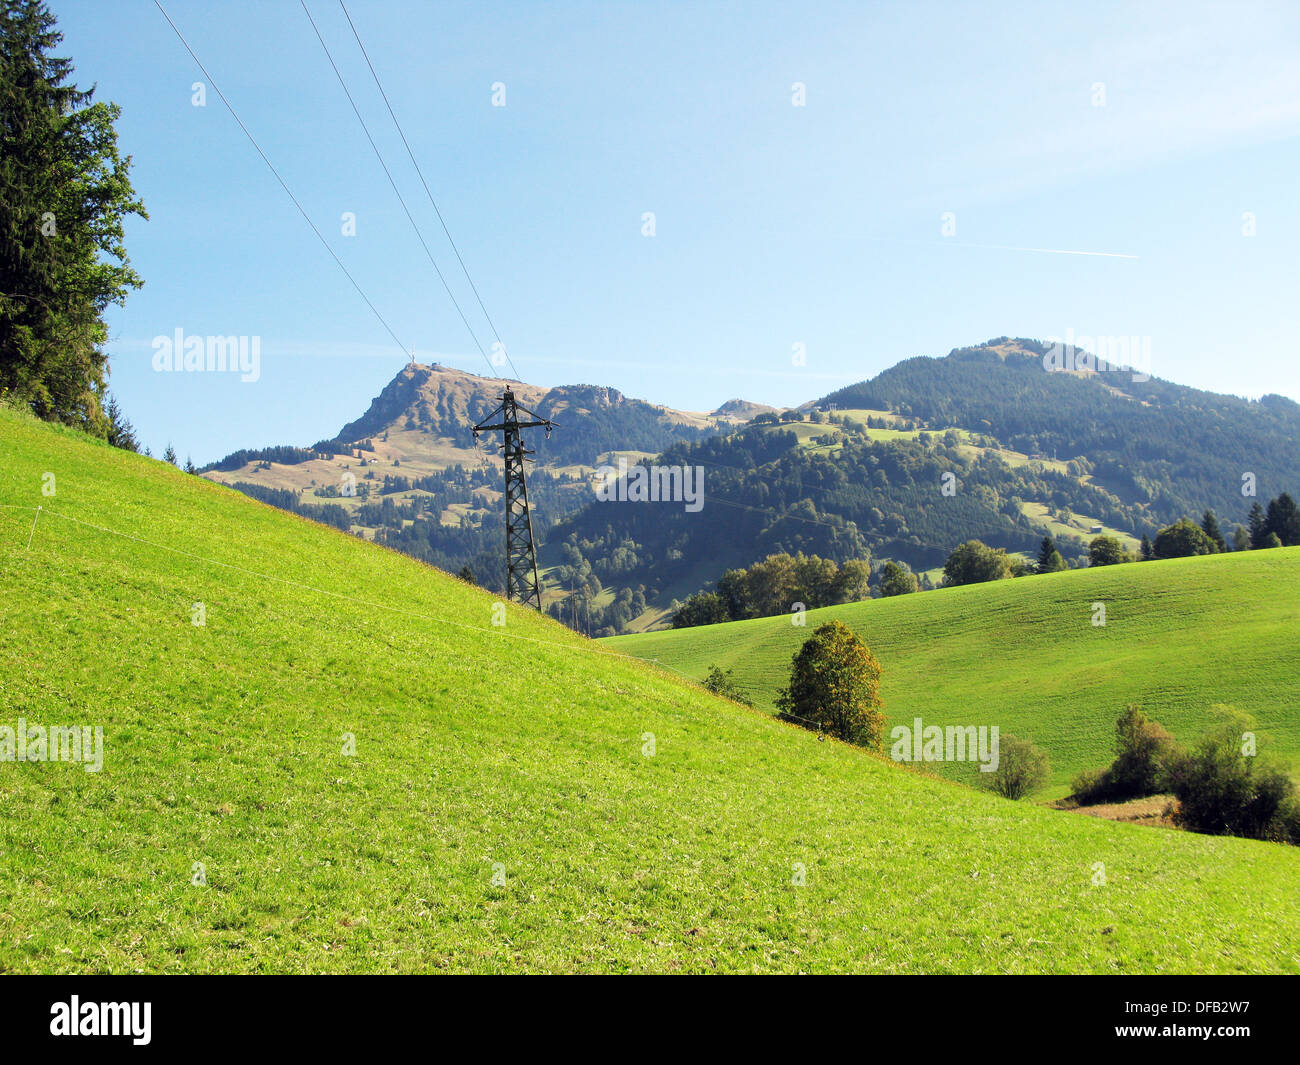 Austria kitzbuhel Europeview scene alpine meadows Stock Photo